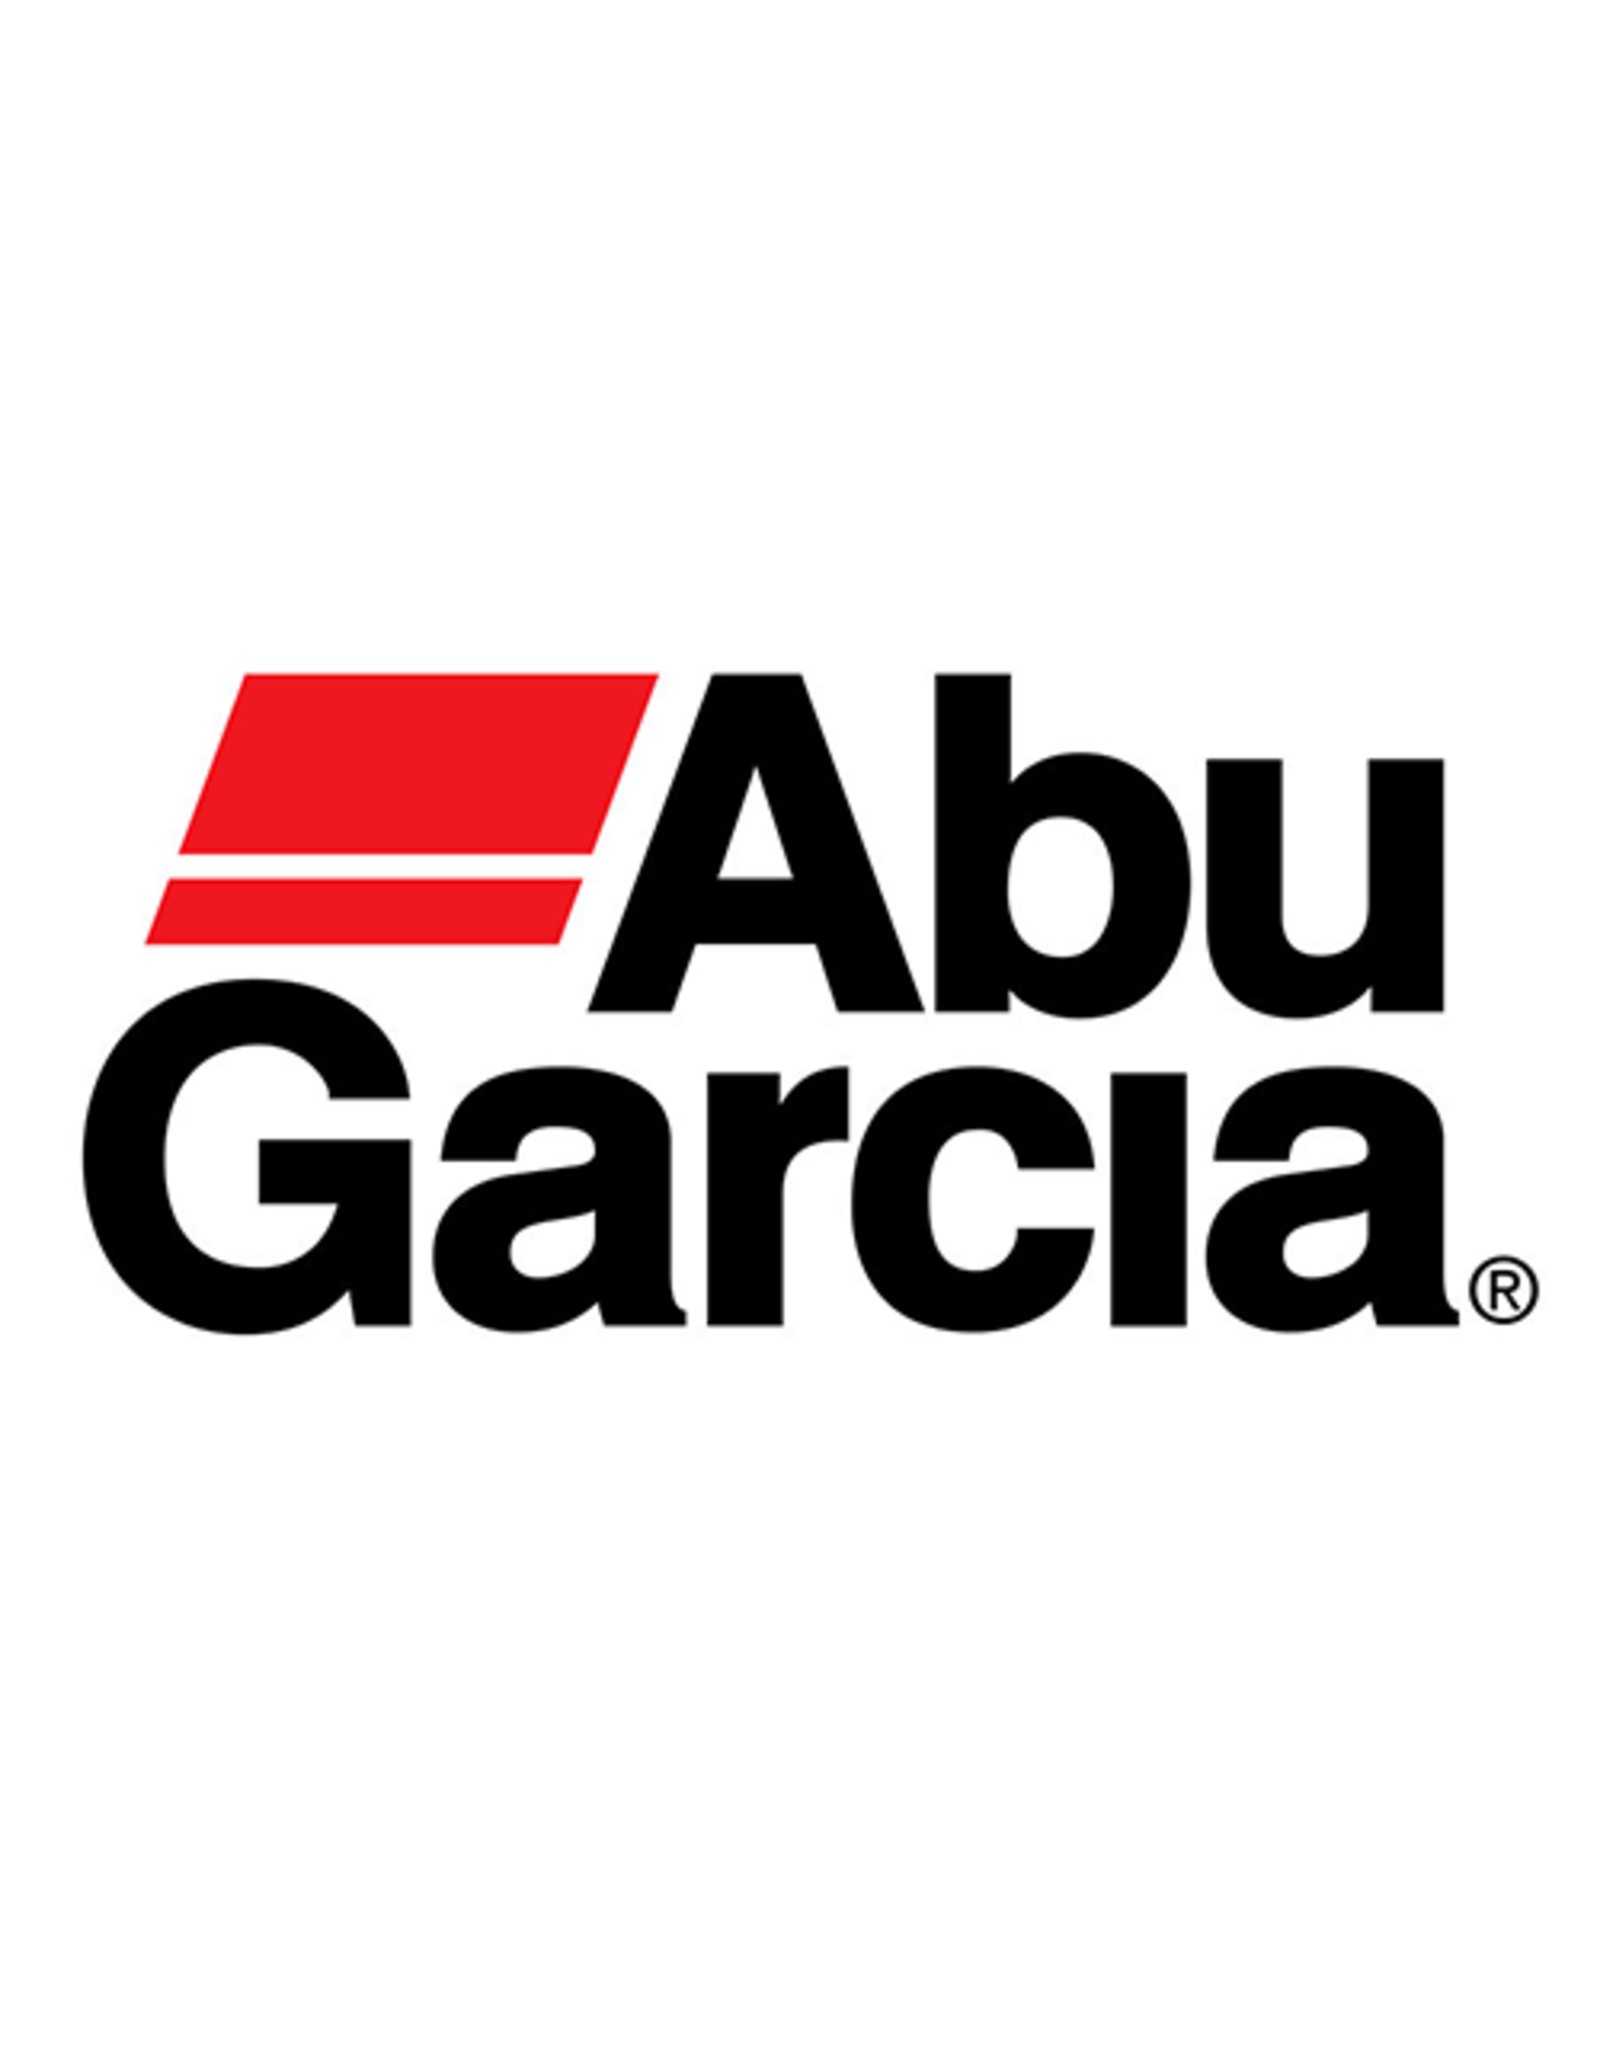 Abu Garcia 1116107  SCREW